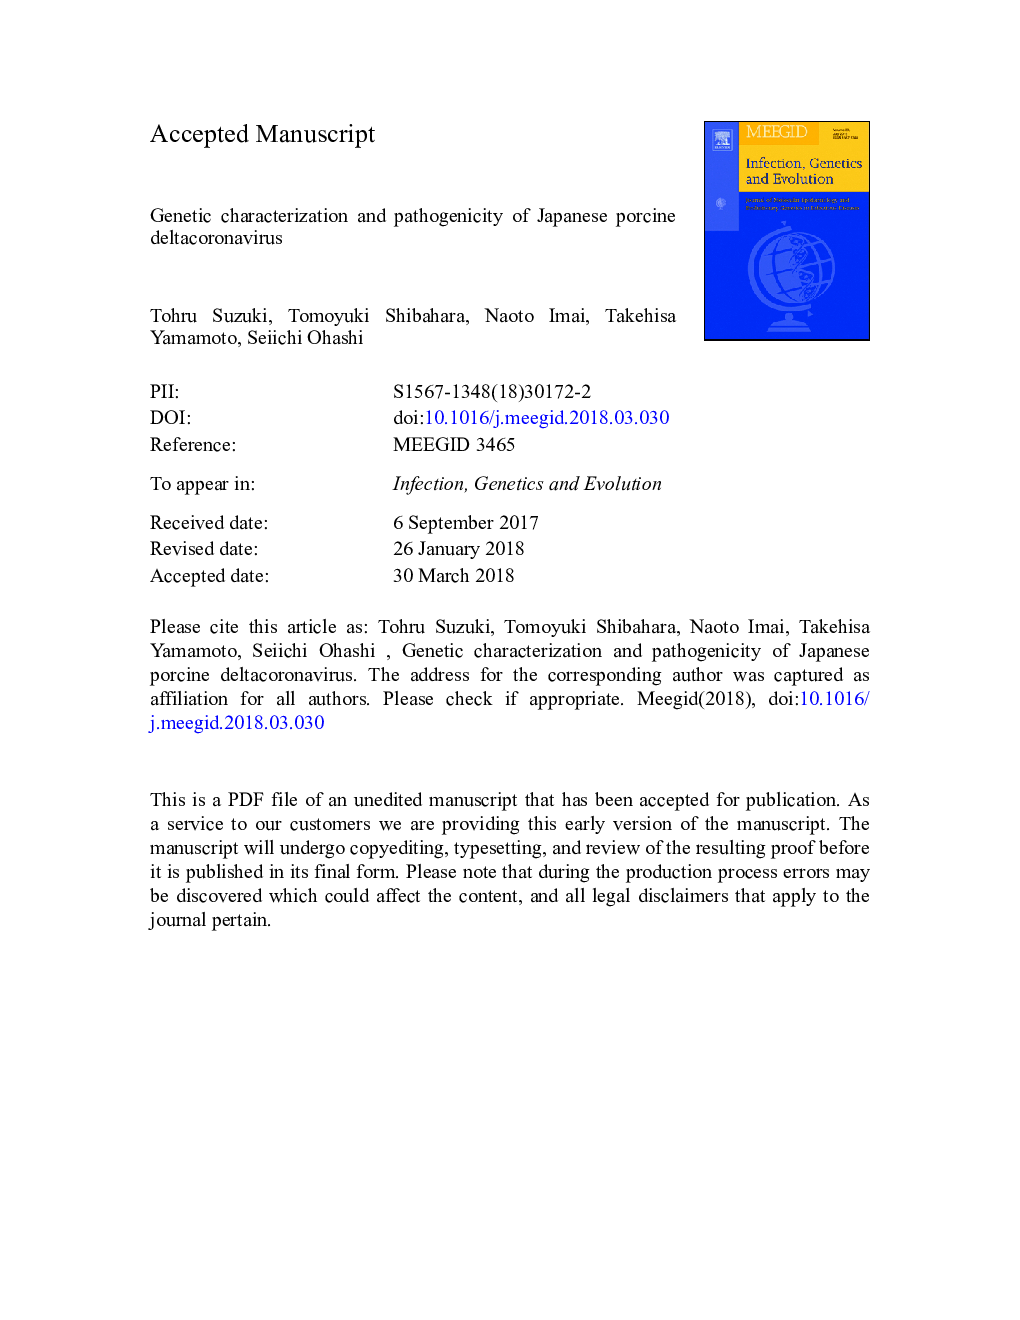 Genetic characterization and pathogenicity of Japanese porcine deltacoronavirus